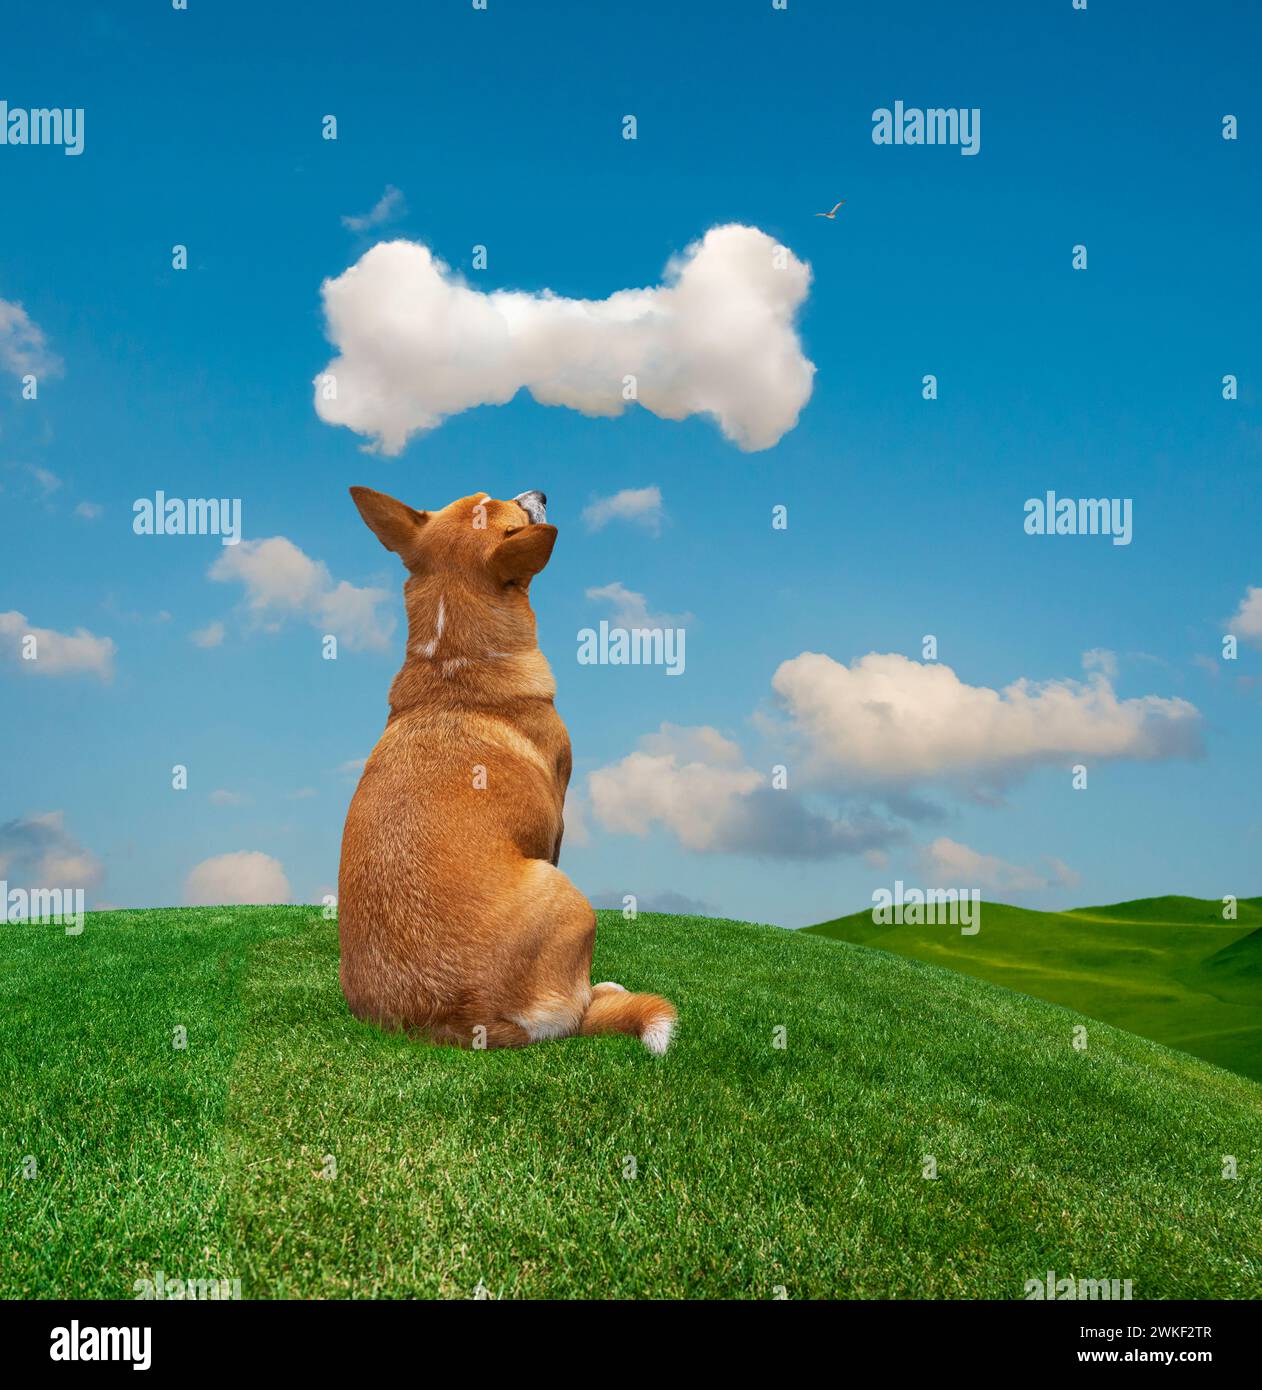 Un chien s'assoit sur une pelouse herbeuse et regarde avec impatience un nuage en forme d'os au-dessus d'une image amusante sur le désir, les rêves et les possibilités. Banque D'Images